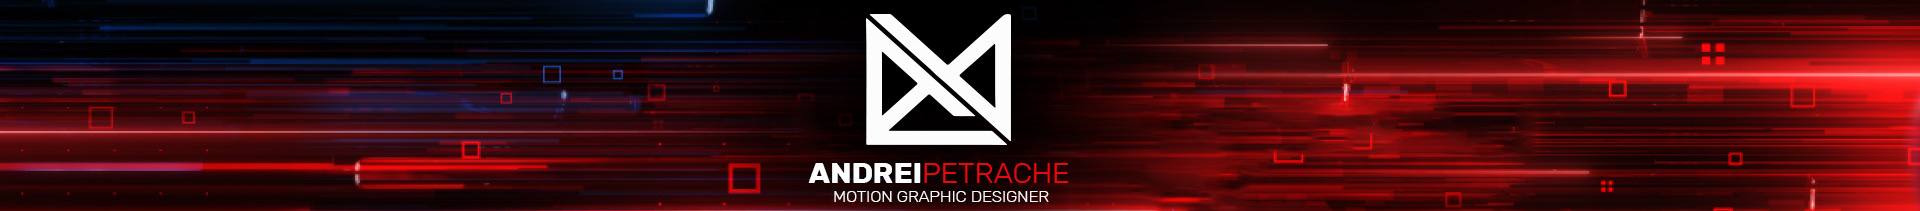 Andrei Petrache's profile banner